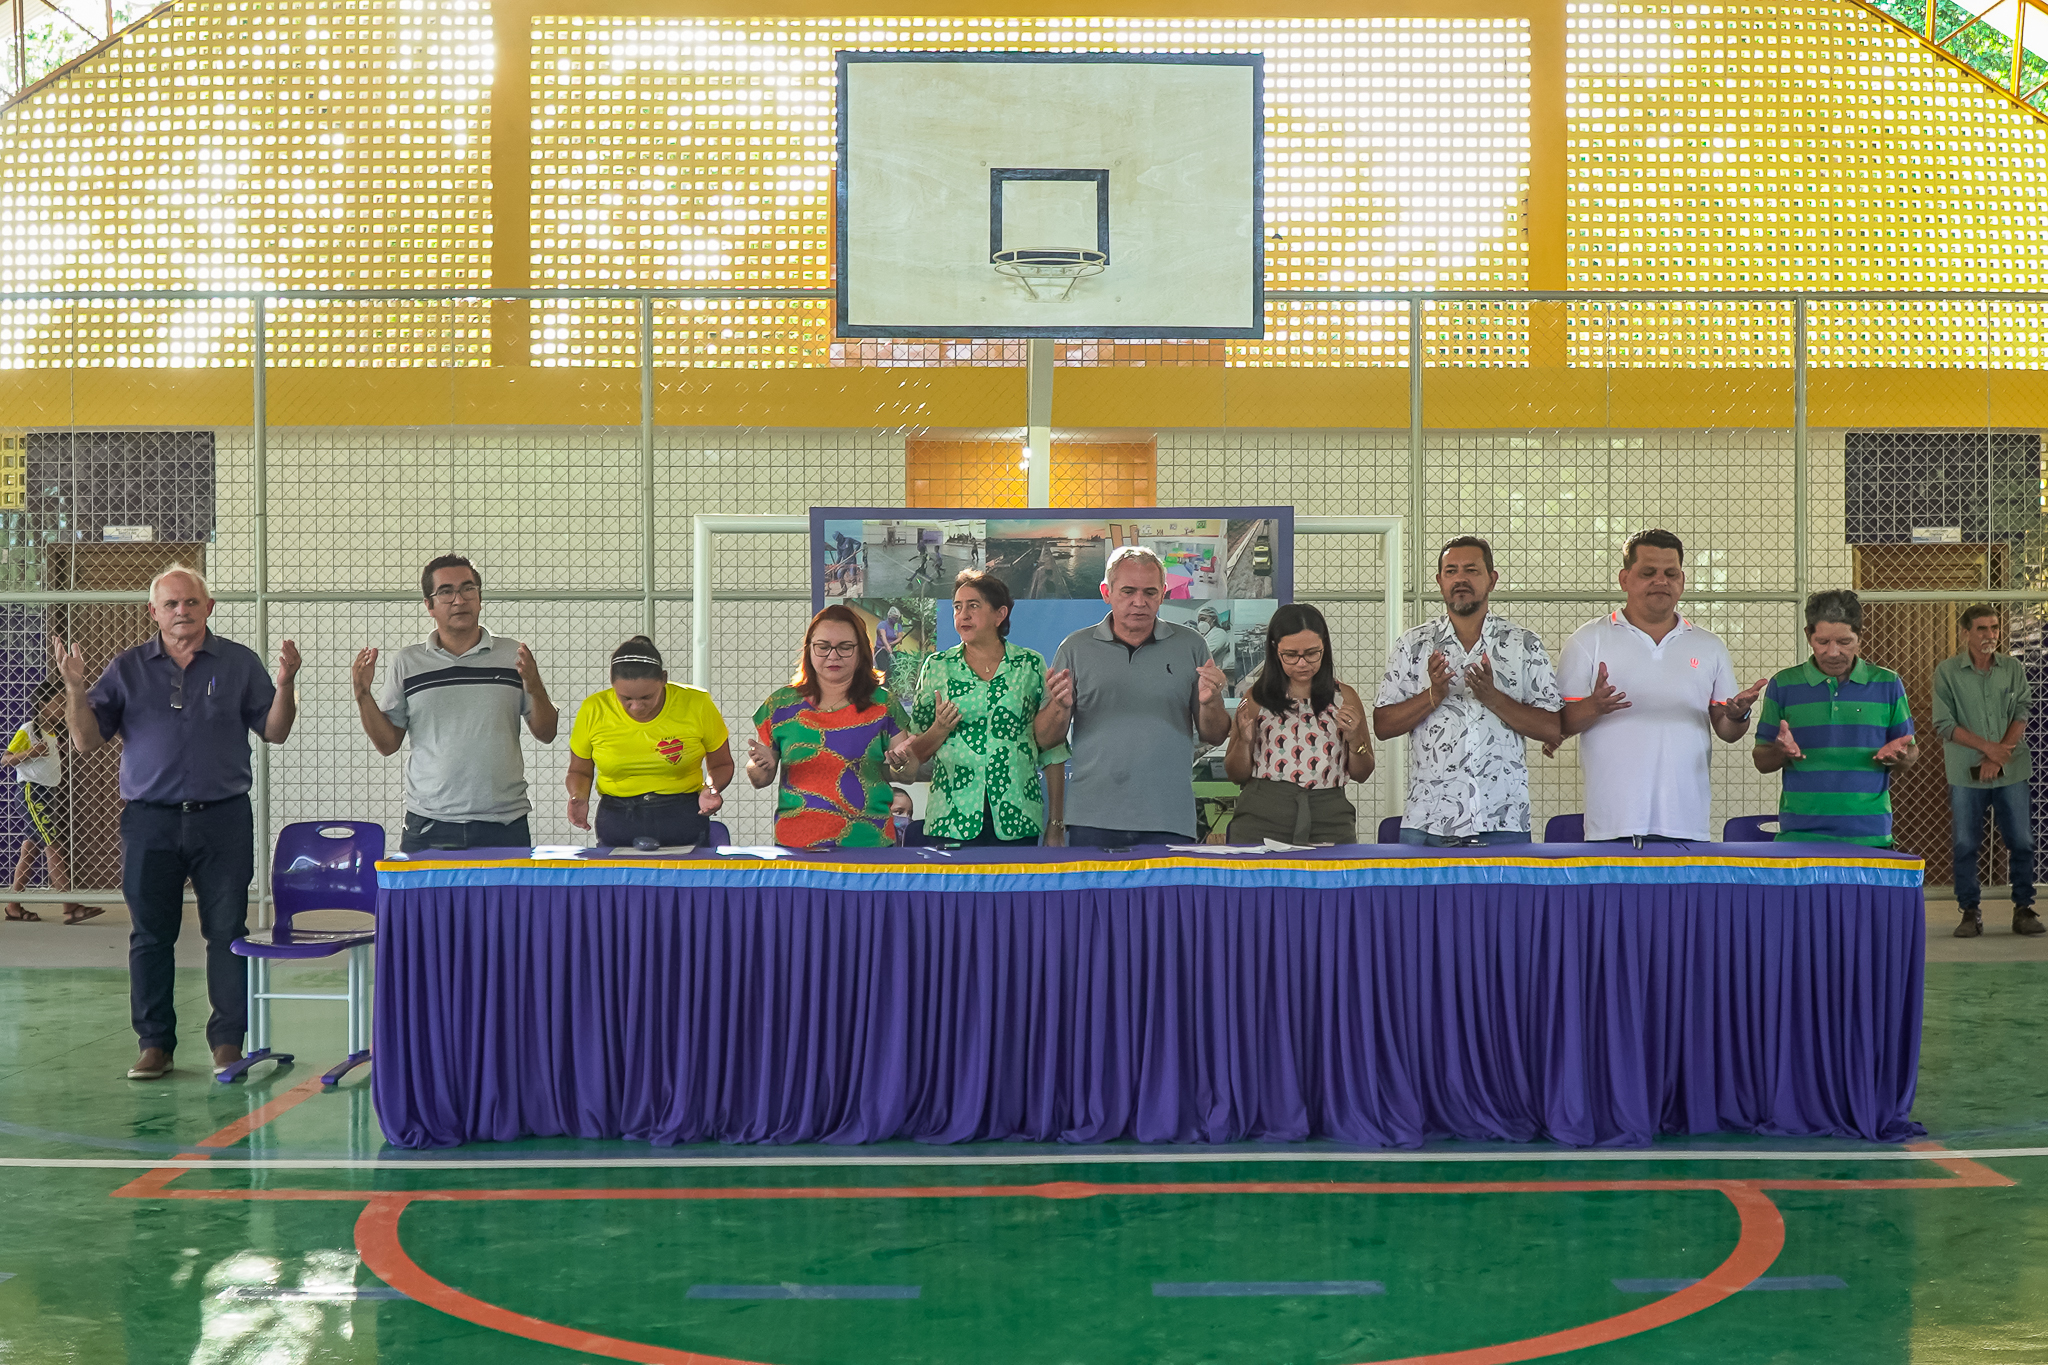 Escola Municipal Sagrado Coração de Jesus realiza o 5º Jogos Internos -  Prefeitura Municipal de Senador Rui Palmeira/AL